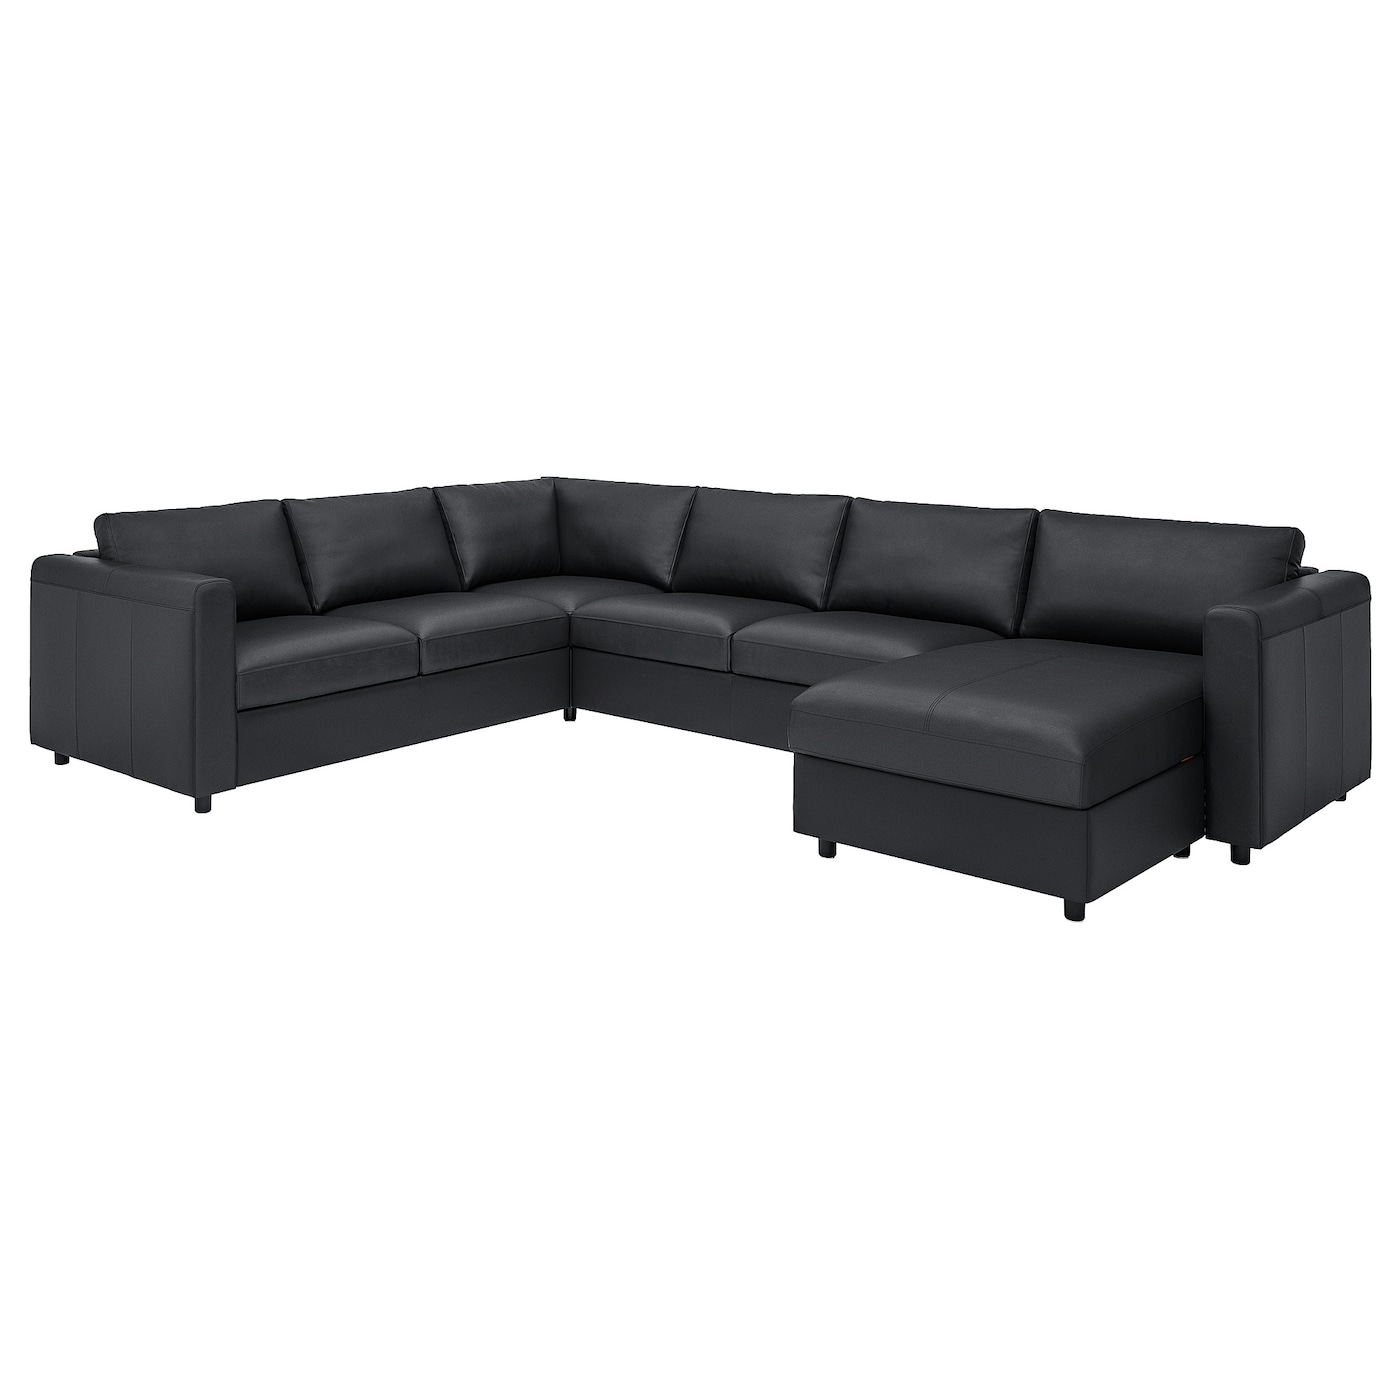 5-местный угловой диван с шезлонгом - IKEA VIMLE/GRANN/BOMSTAD, черный, кожа, 330/249х164/98х83 см, ВИМЛЕ/ГРАНН/БУМСТАД ИКЕА